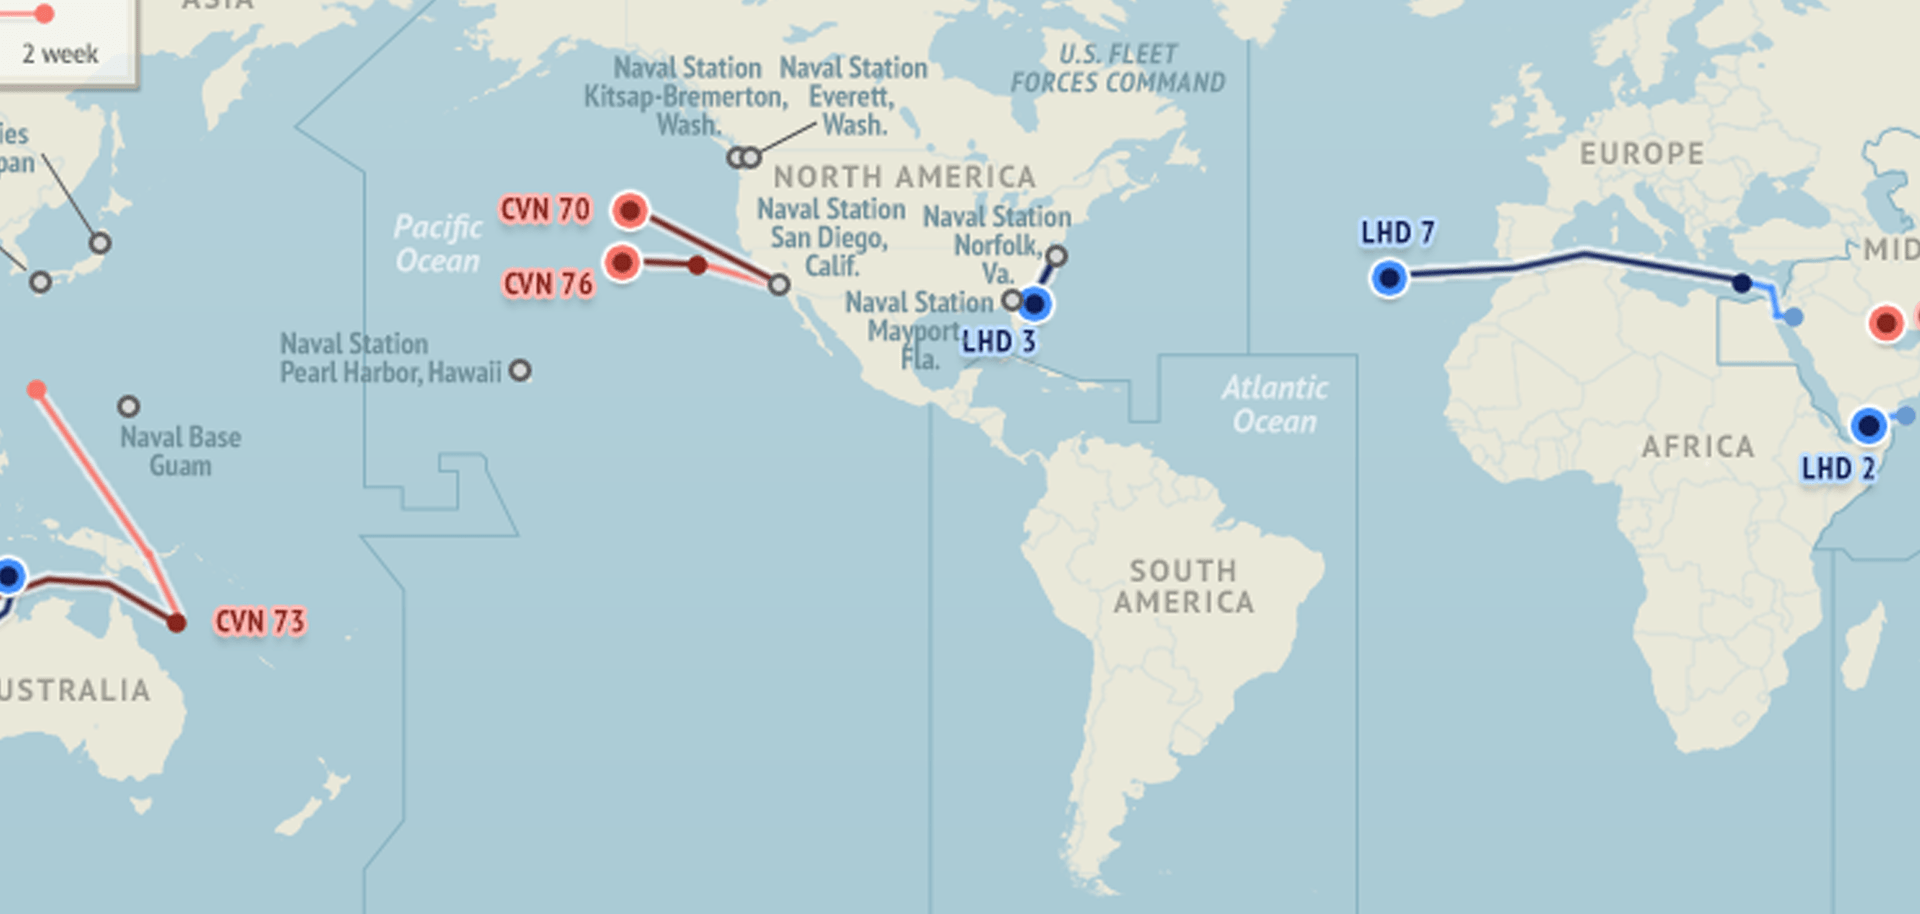 U.S. Naval Update Map: July 9, 2015